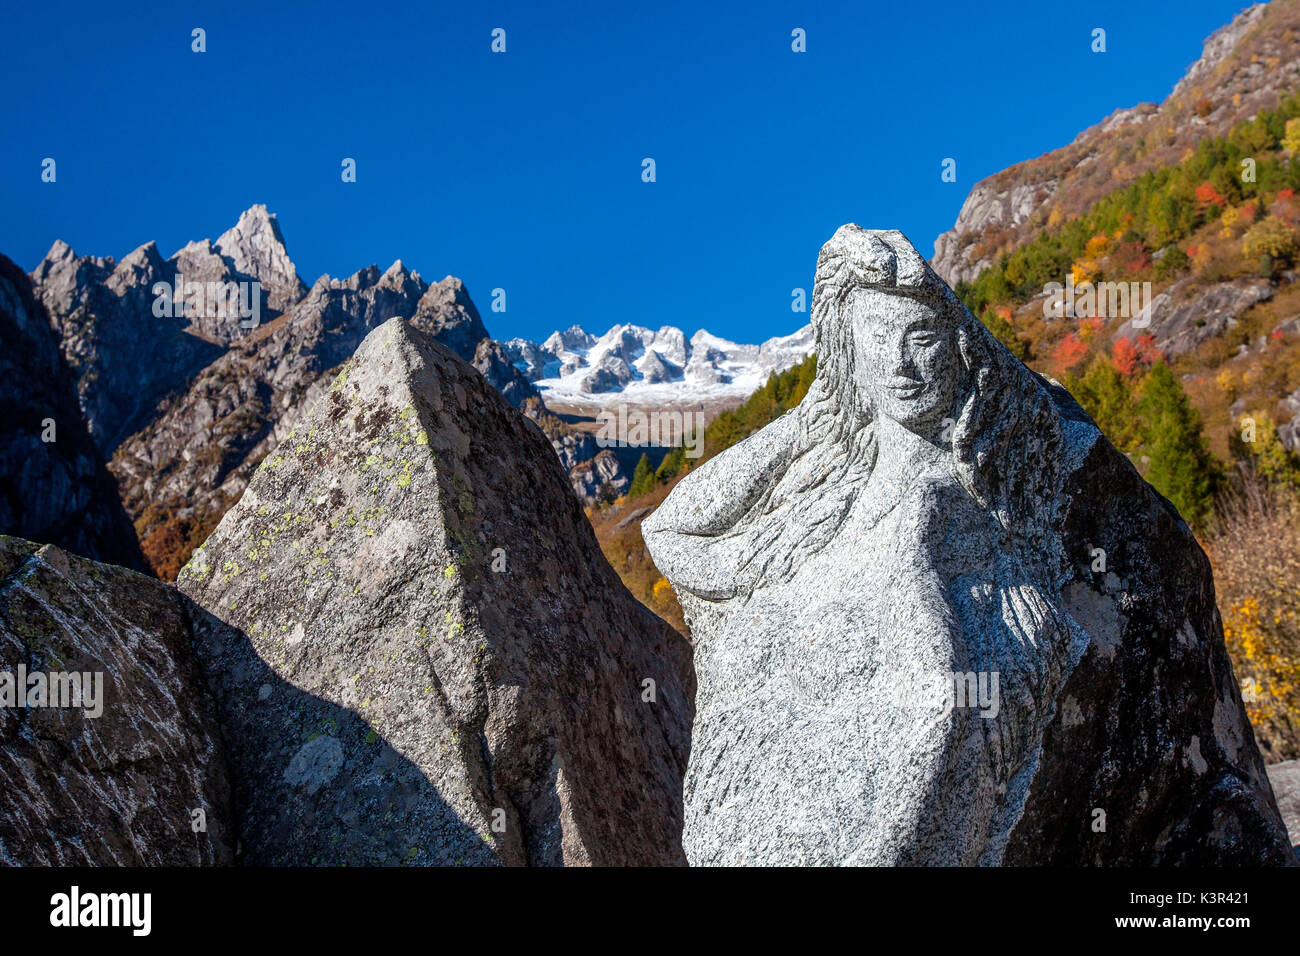 La escultura de granito a orillas del arroyo Masino, Valmasino.Valtellina Lombardía Italia Europa Foto de stock